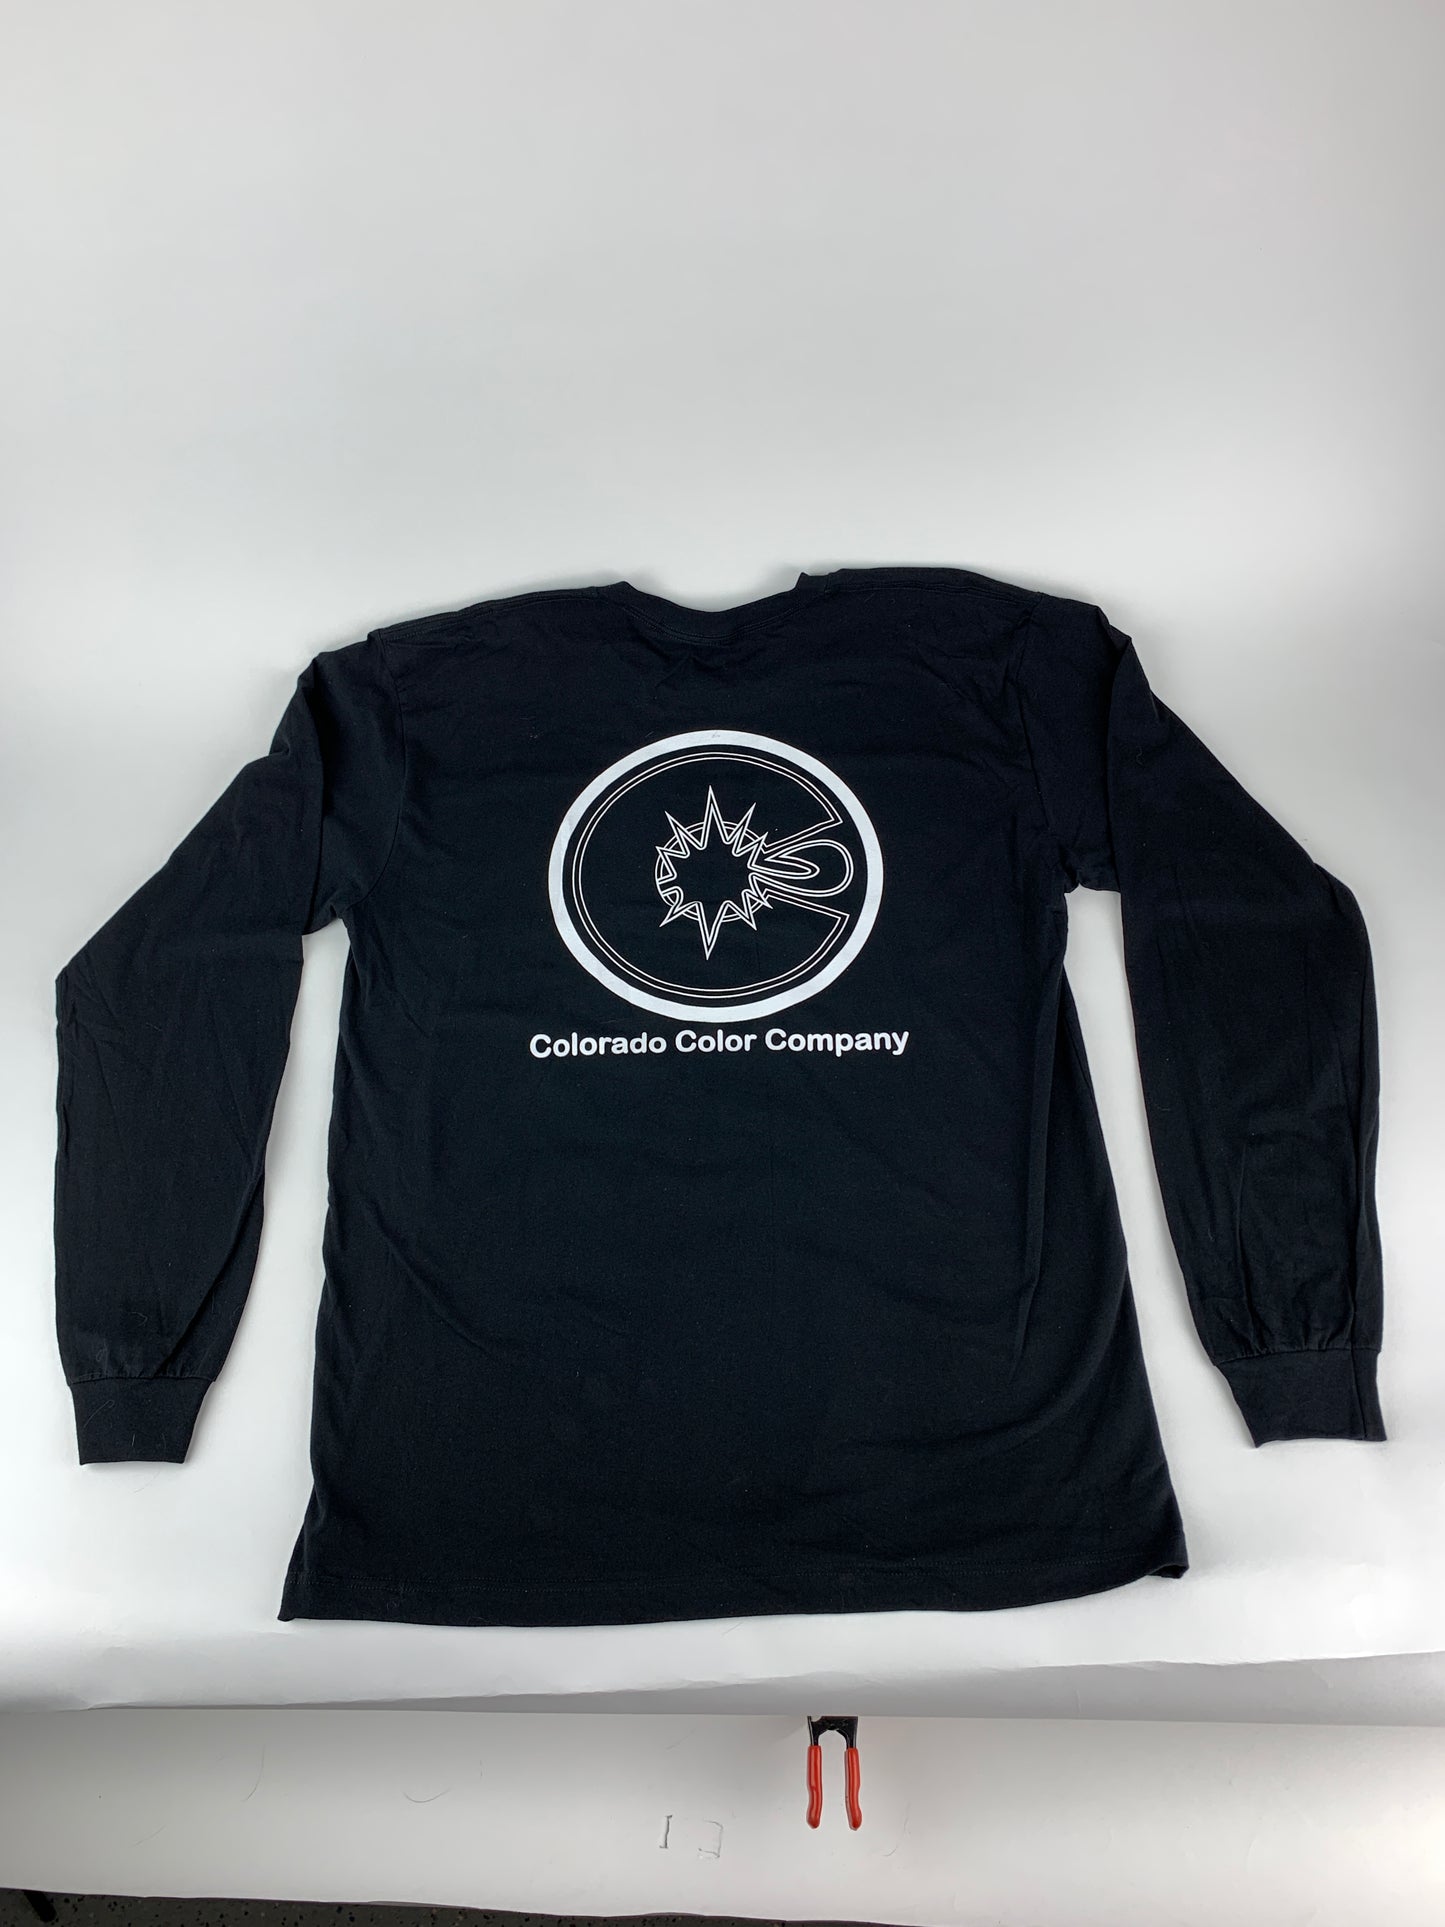 Schwarzes Langarm-T-Shirt der Colorado Color Company – American Apparel